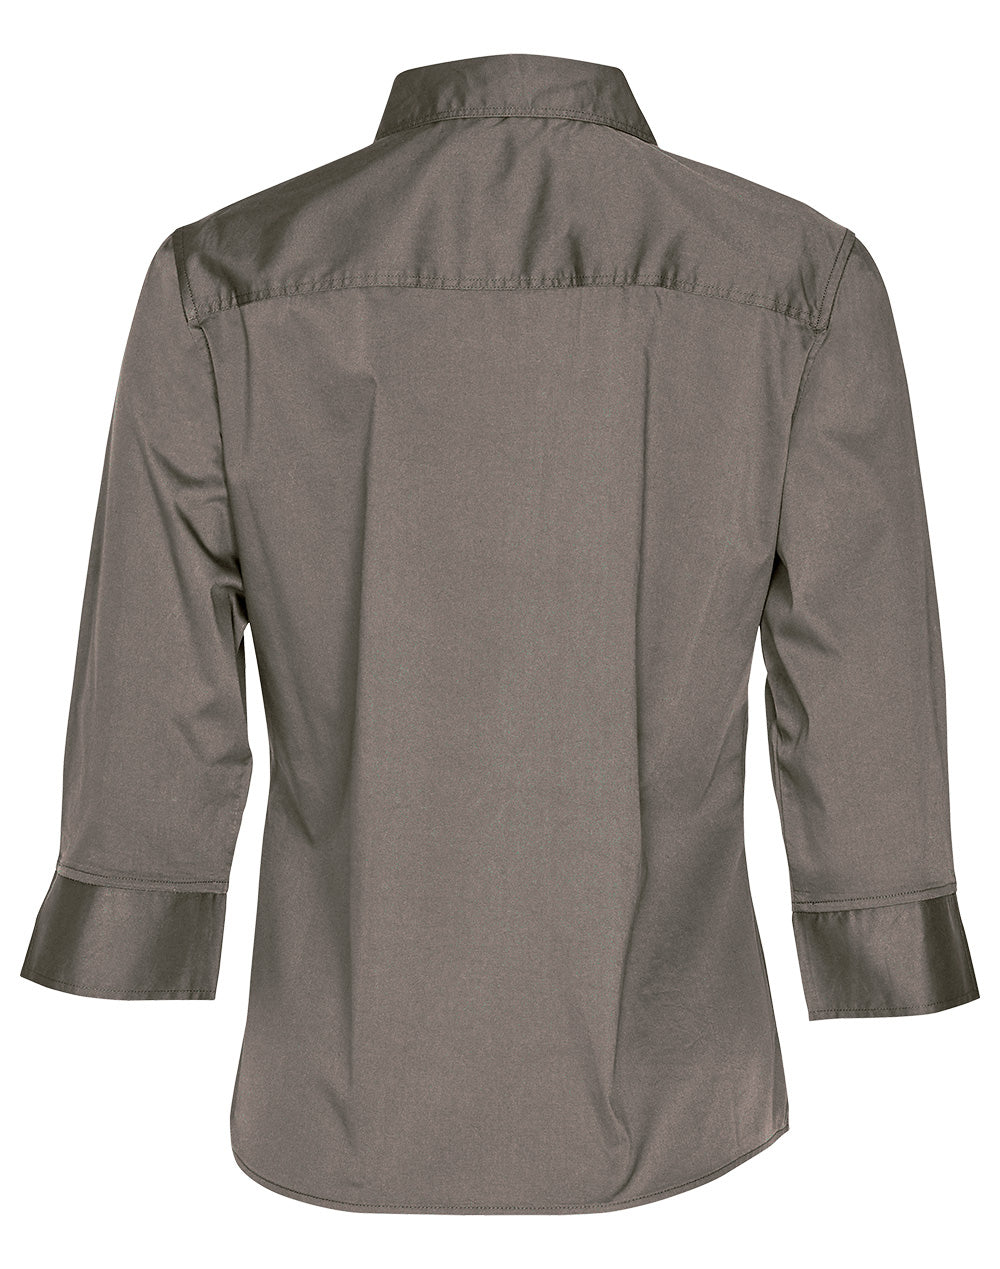 Winning Spirit-Women's 3/4 Sleeve Military Shirt-M8913